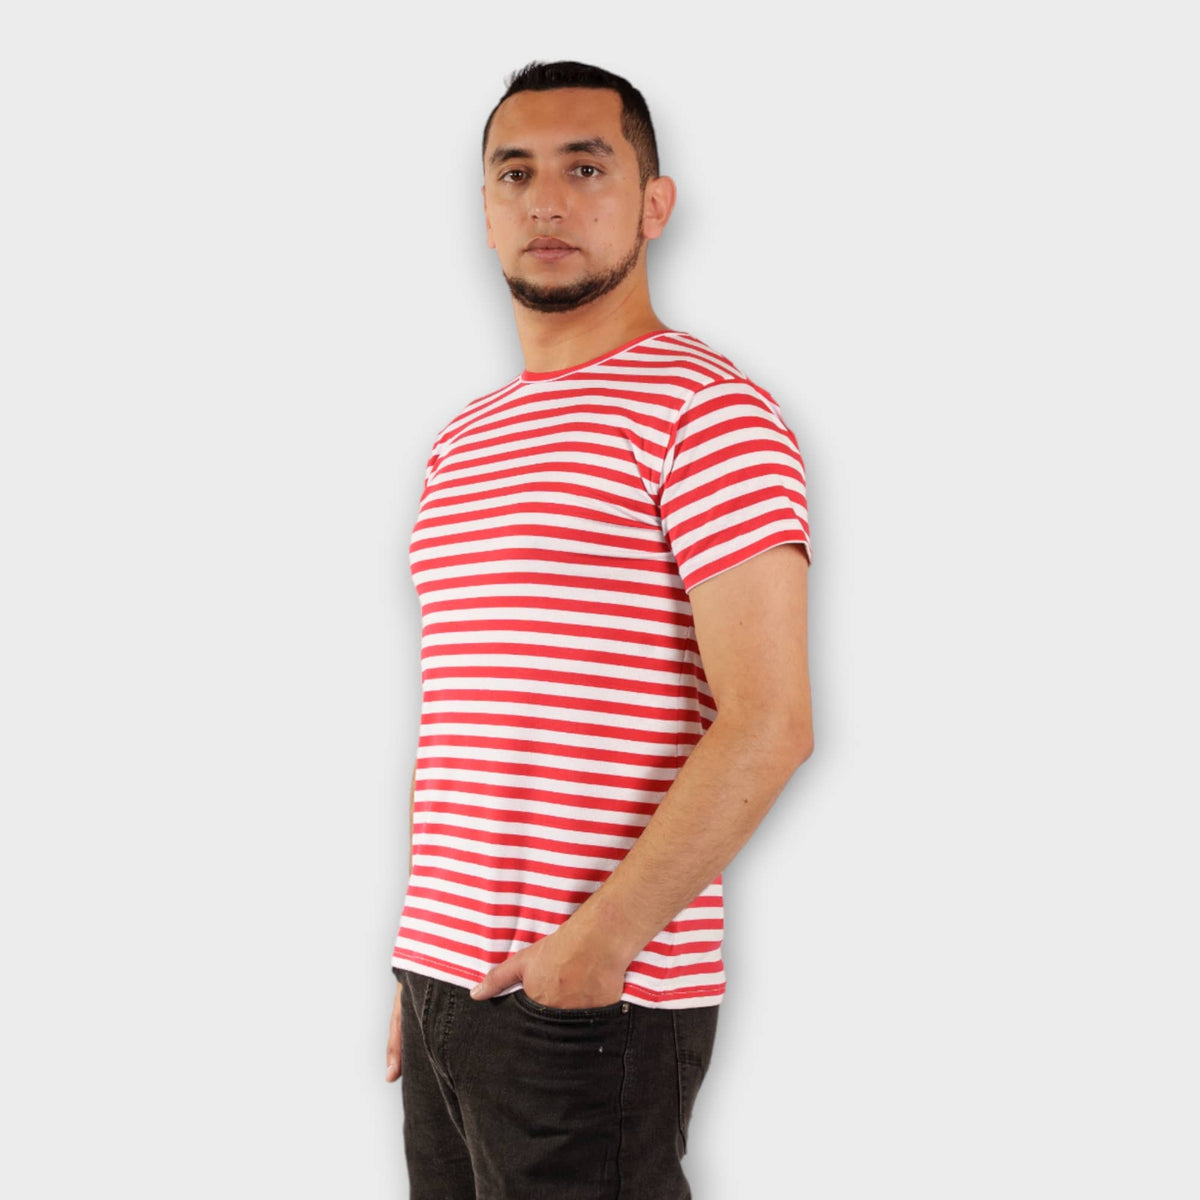 Camisetas de rayas blancas rojas, Diseños únicos